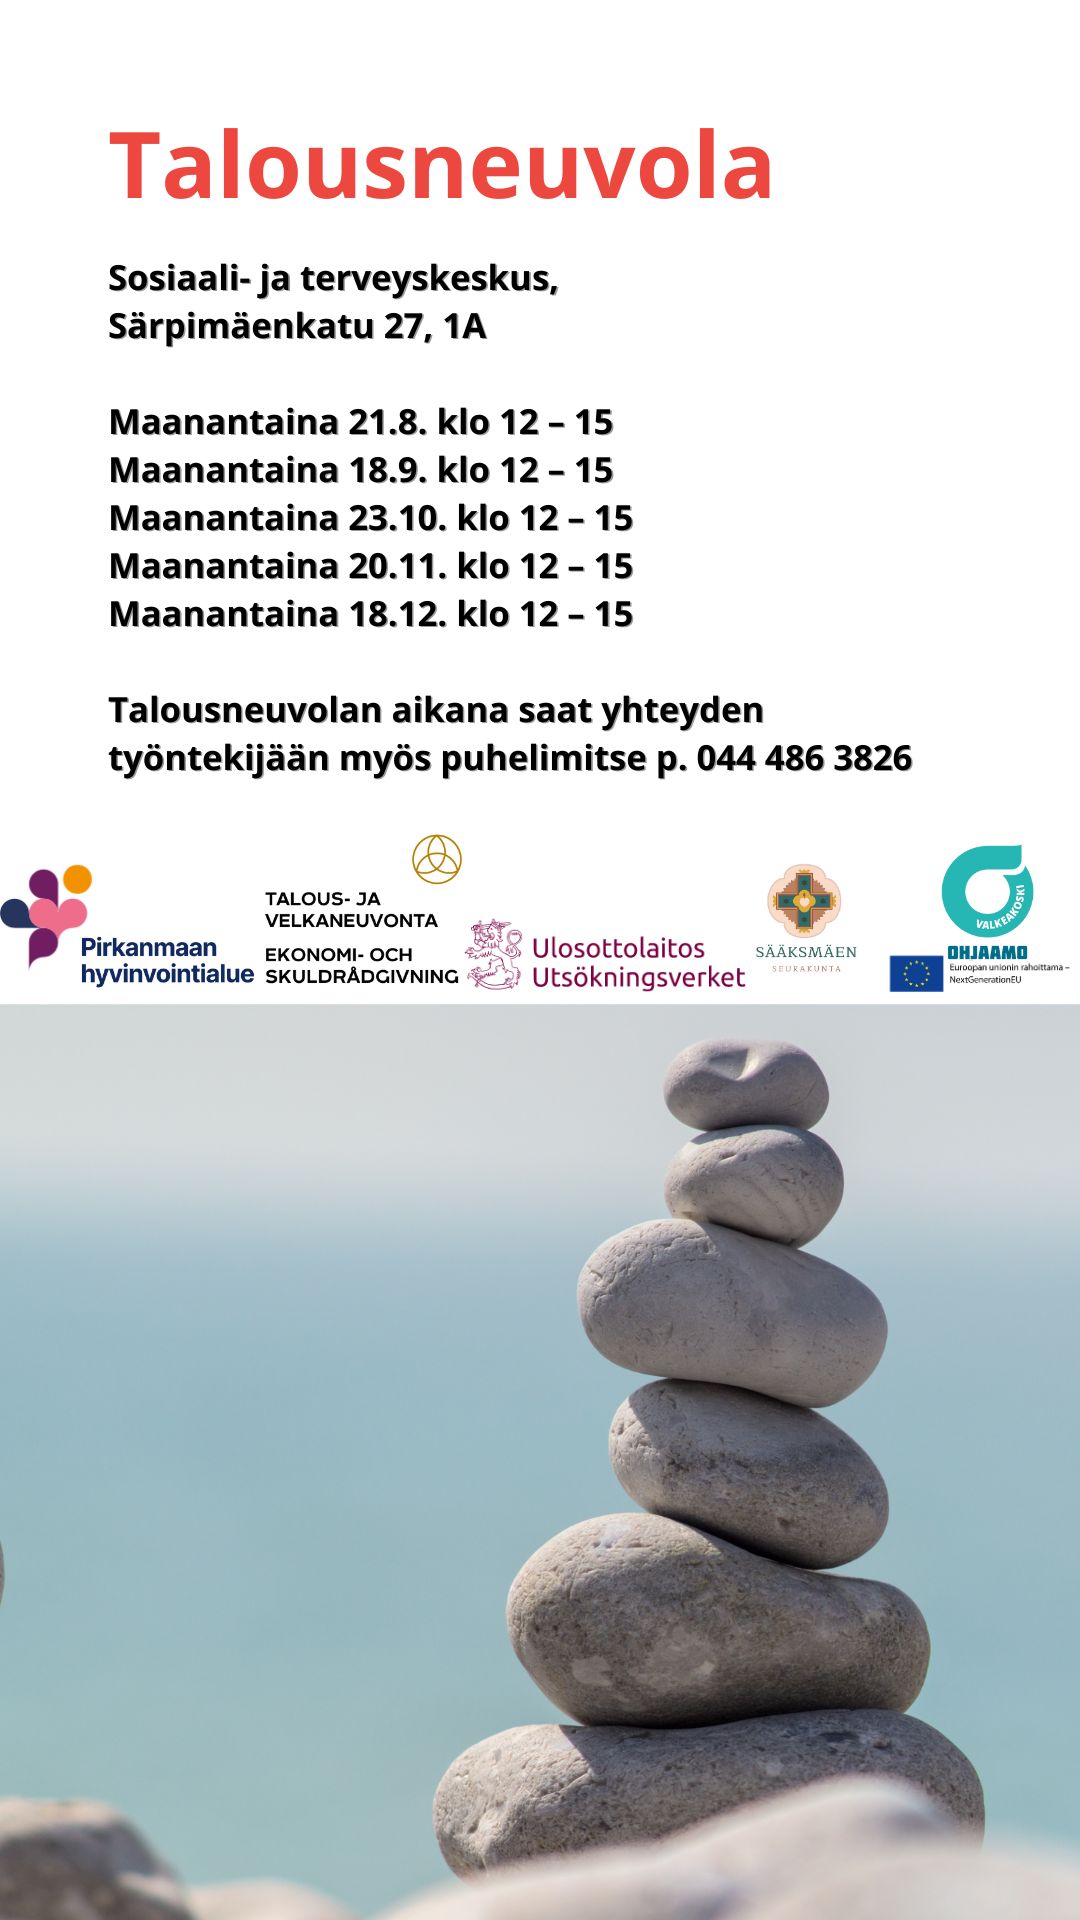 talousneuvola joka kuukauden toinen maanantai klo 12-15 Sosiaali- ja terveyskeskus Särpimäenkatu 27, 1A